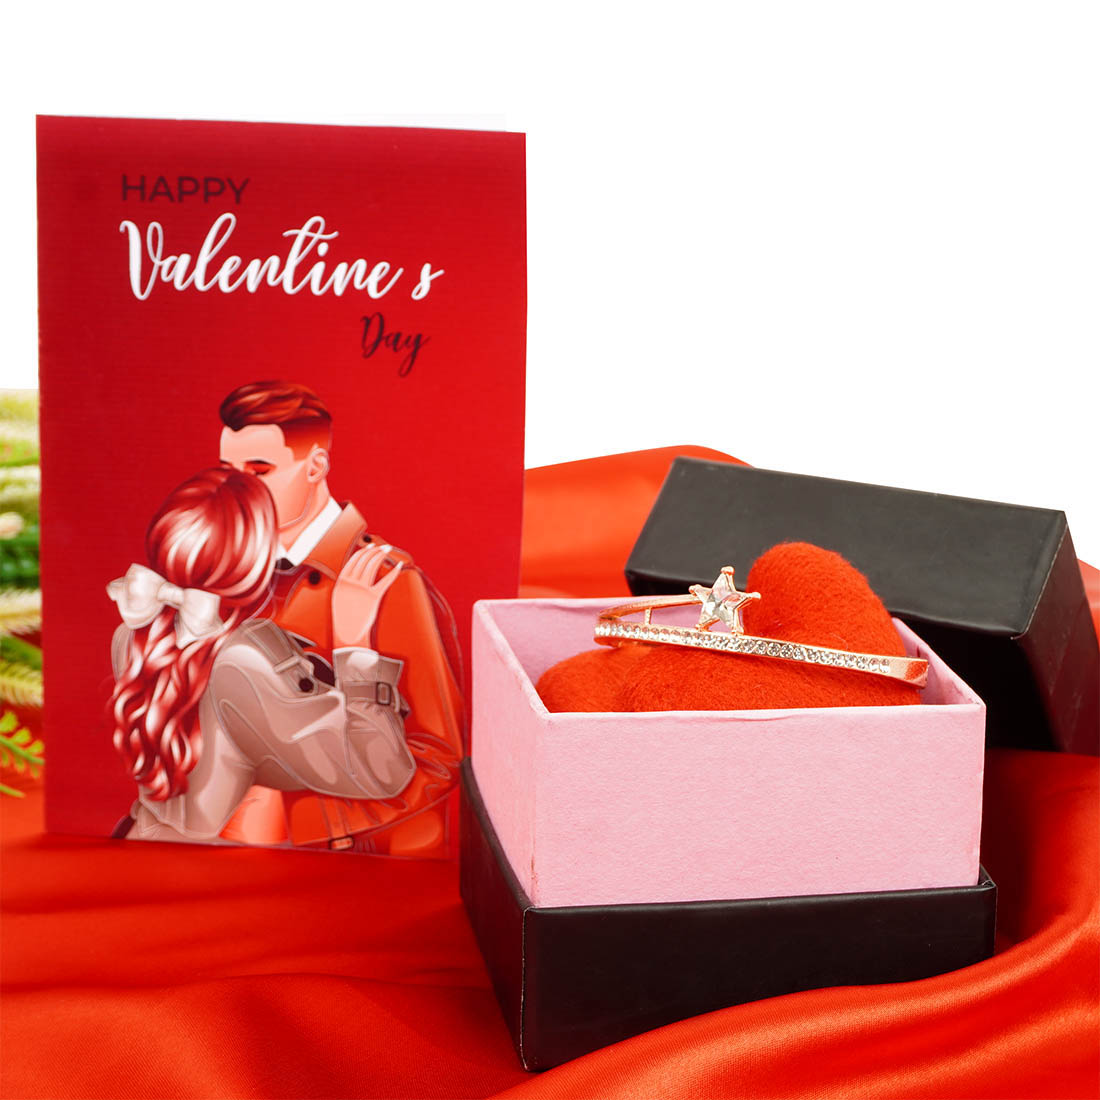 Heart Bracelets , Girlfriend Jewelry, Love Bracelets, Valentines Gifts,  Gifts for Girlfriends, Girlfriends Gift Ideas, Anniversary Gifts - Etsy